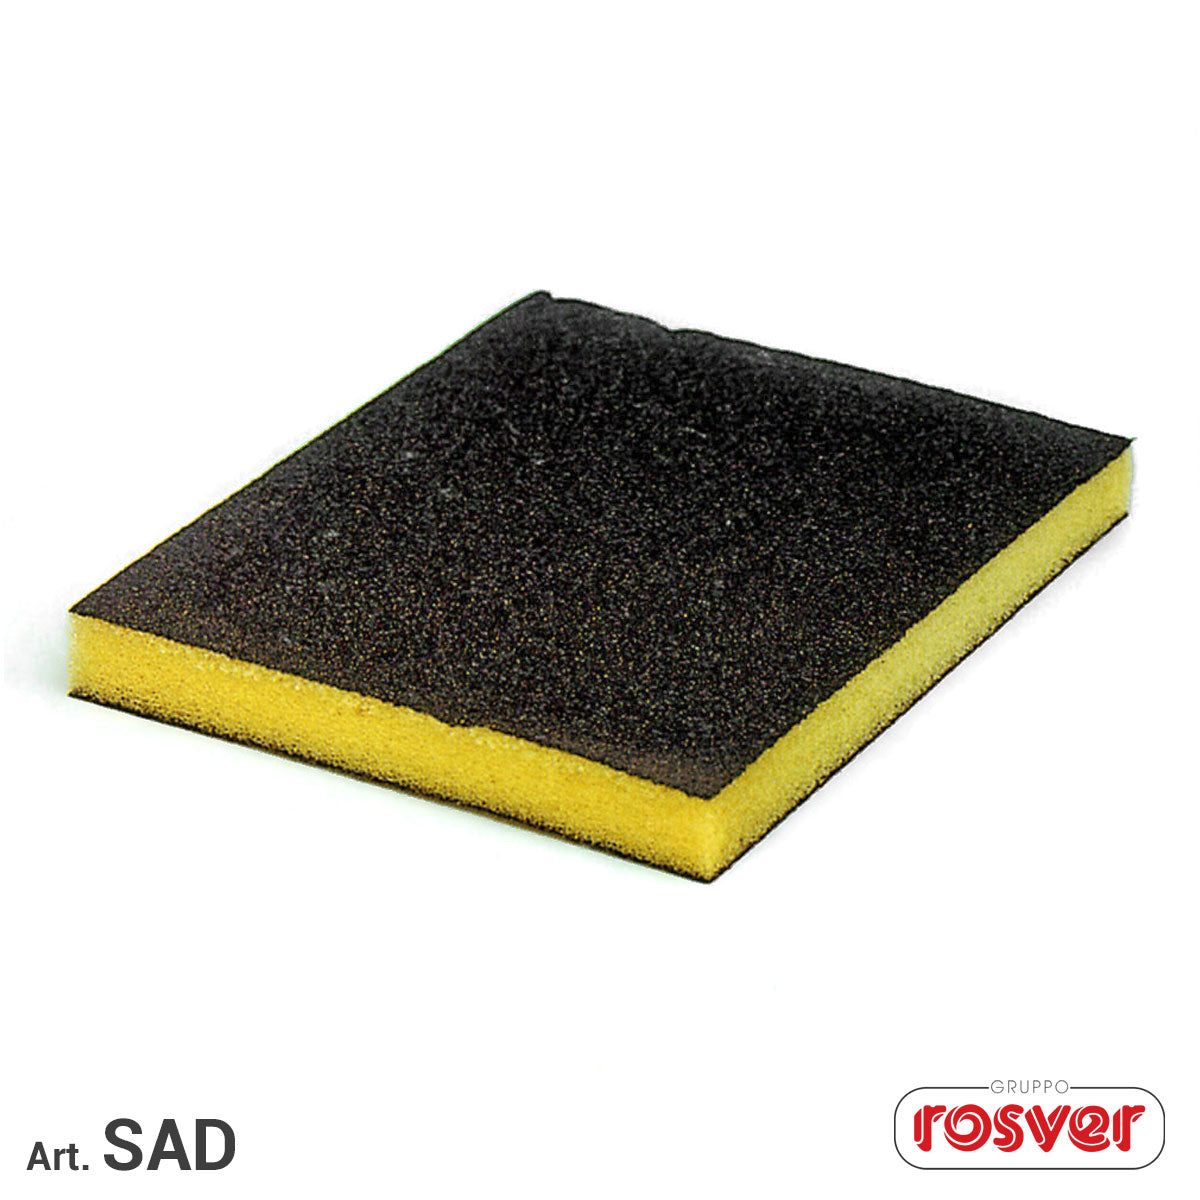 Sheet of abrasive sponge - Rosver - SAD 120x98x13 - Conf.20pz